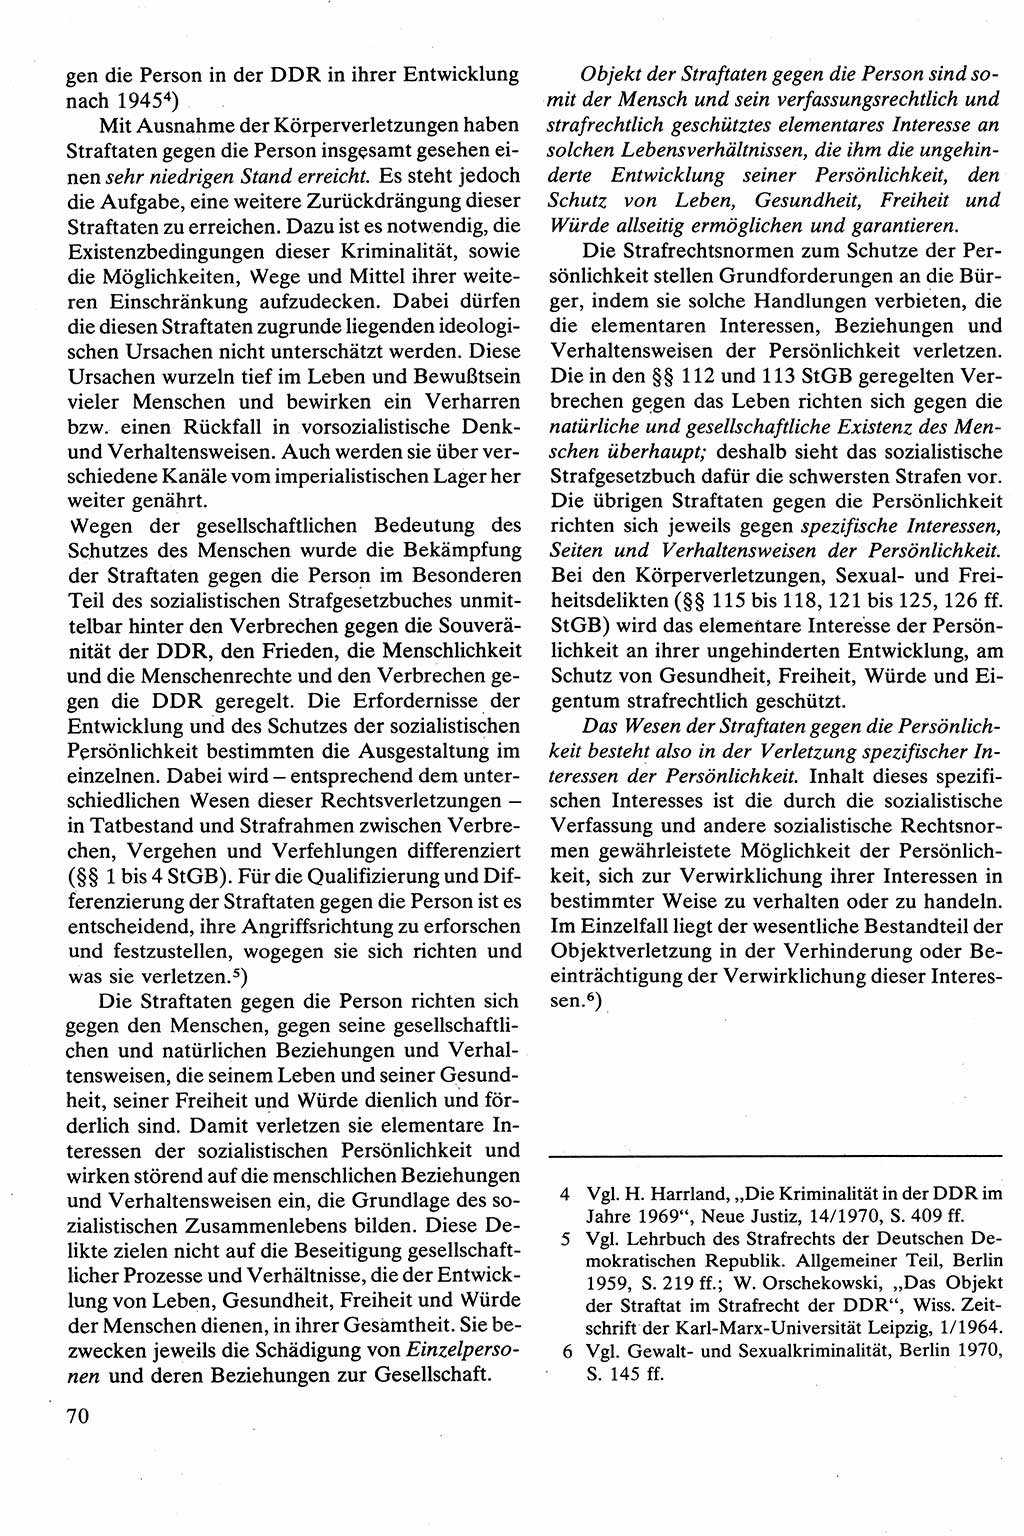 Strafrecht [Deutsche Demokratische Republik (DDR)], Besonderer Teil, Lehrbuch 1981, Seite 70 (Strafr. DDR BT Lb. 1981, S. 70)